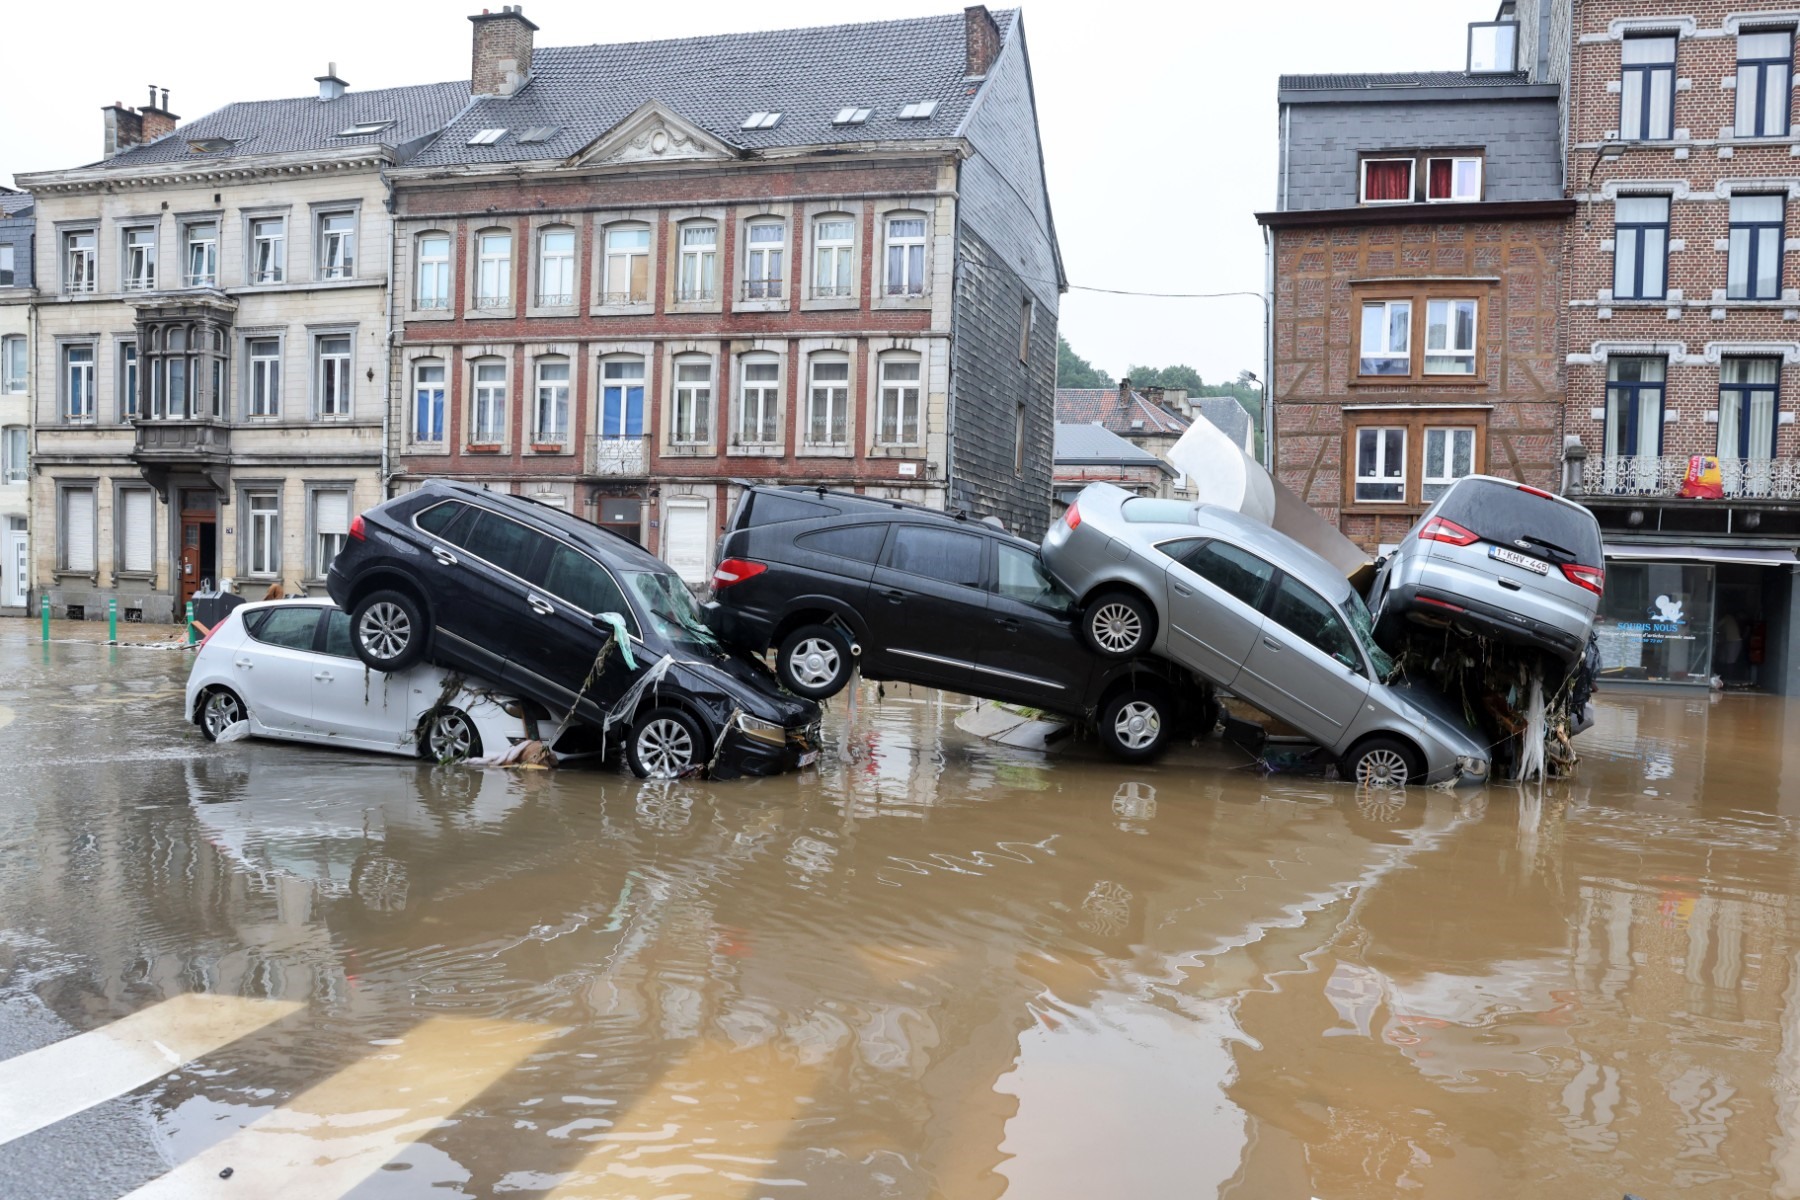 Xe ô tô chất đống sau trận lũ lụt khắp Tây Âu. Ảnh: AFP